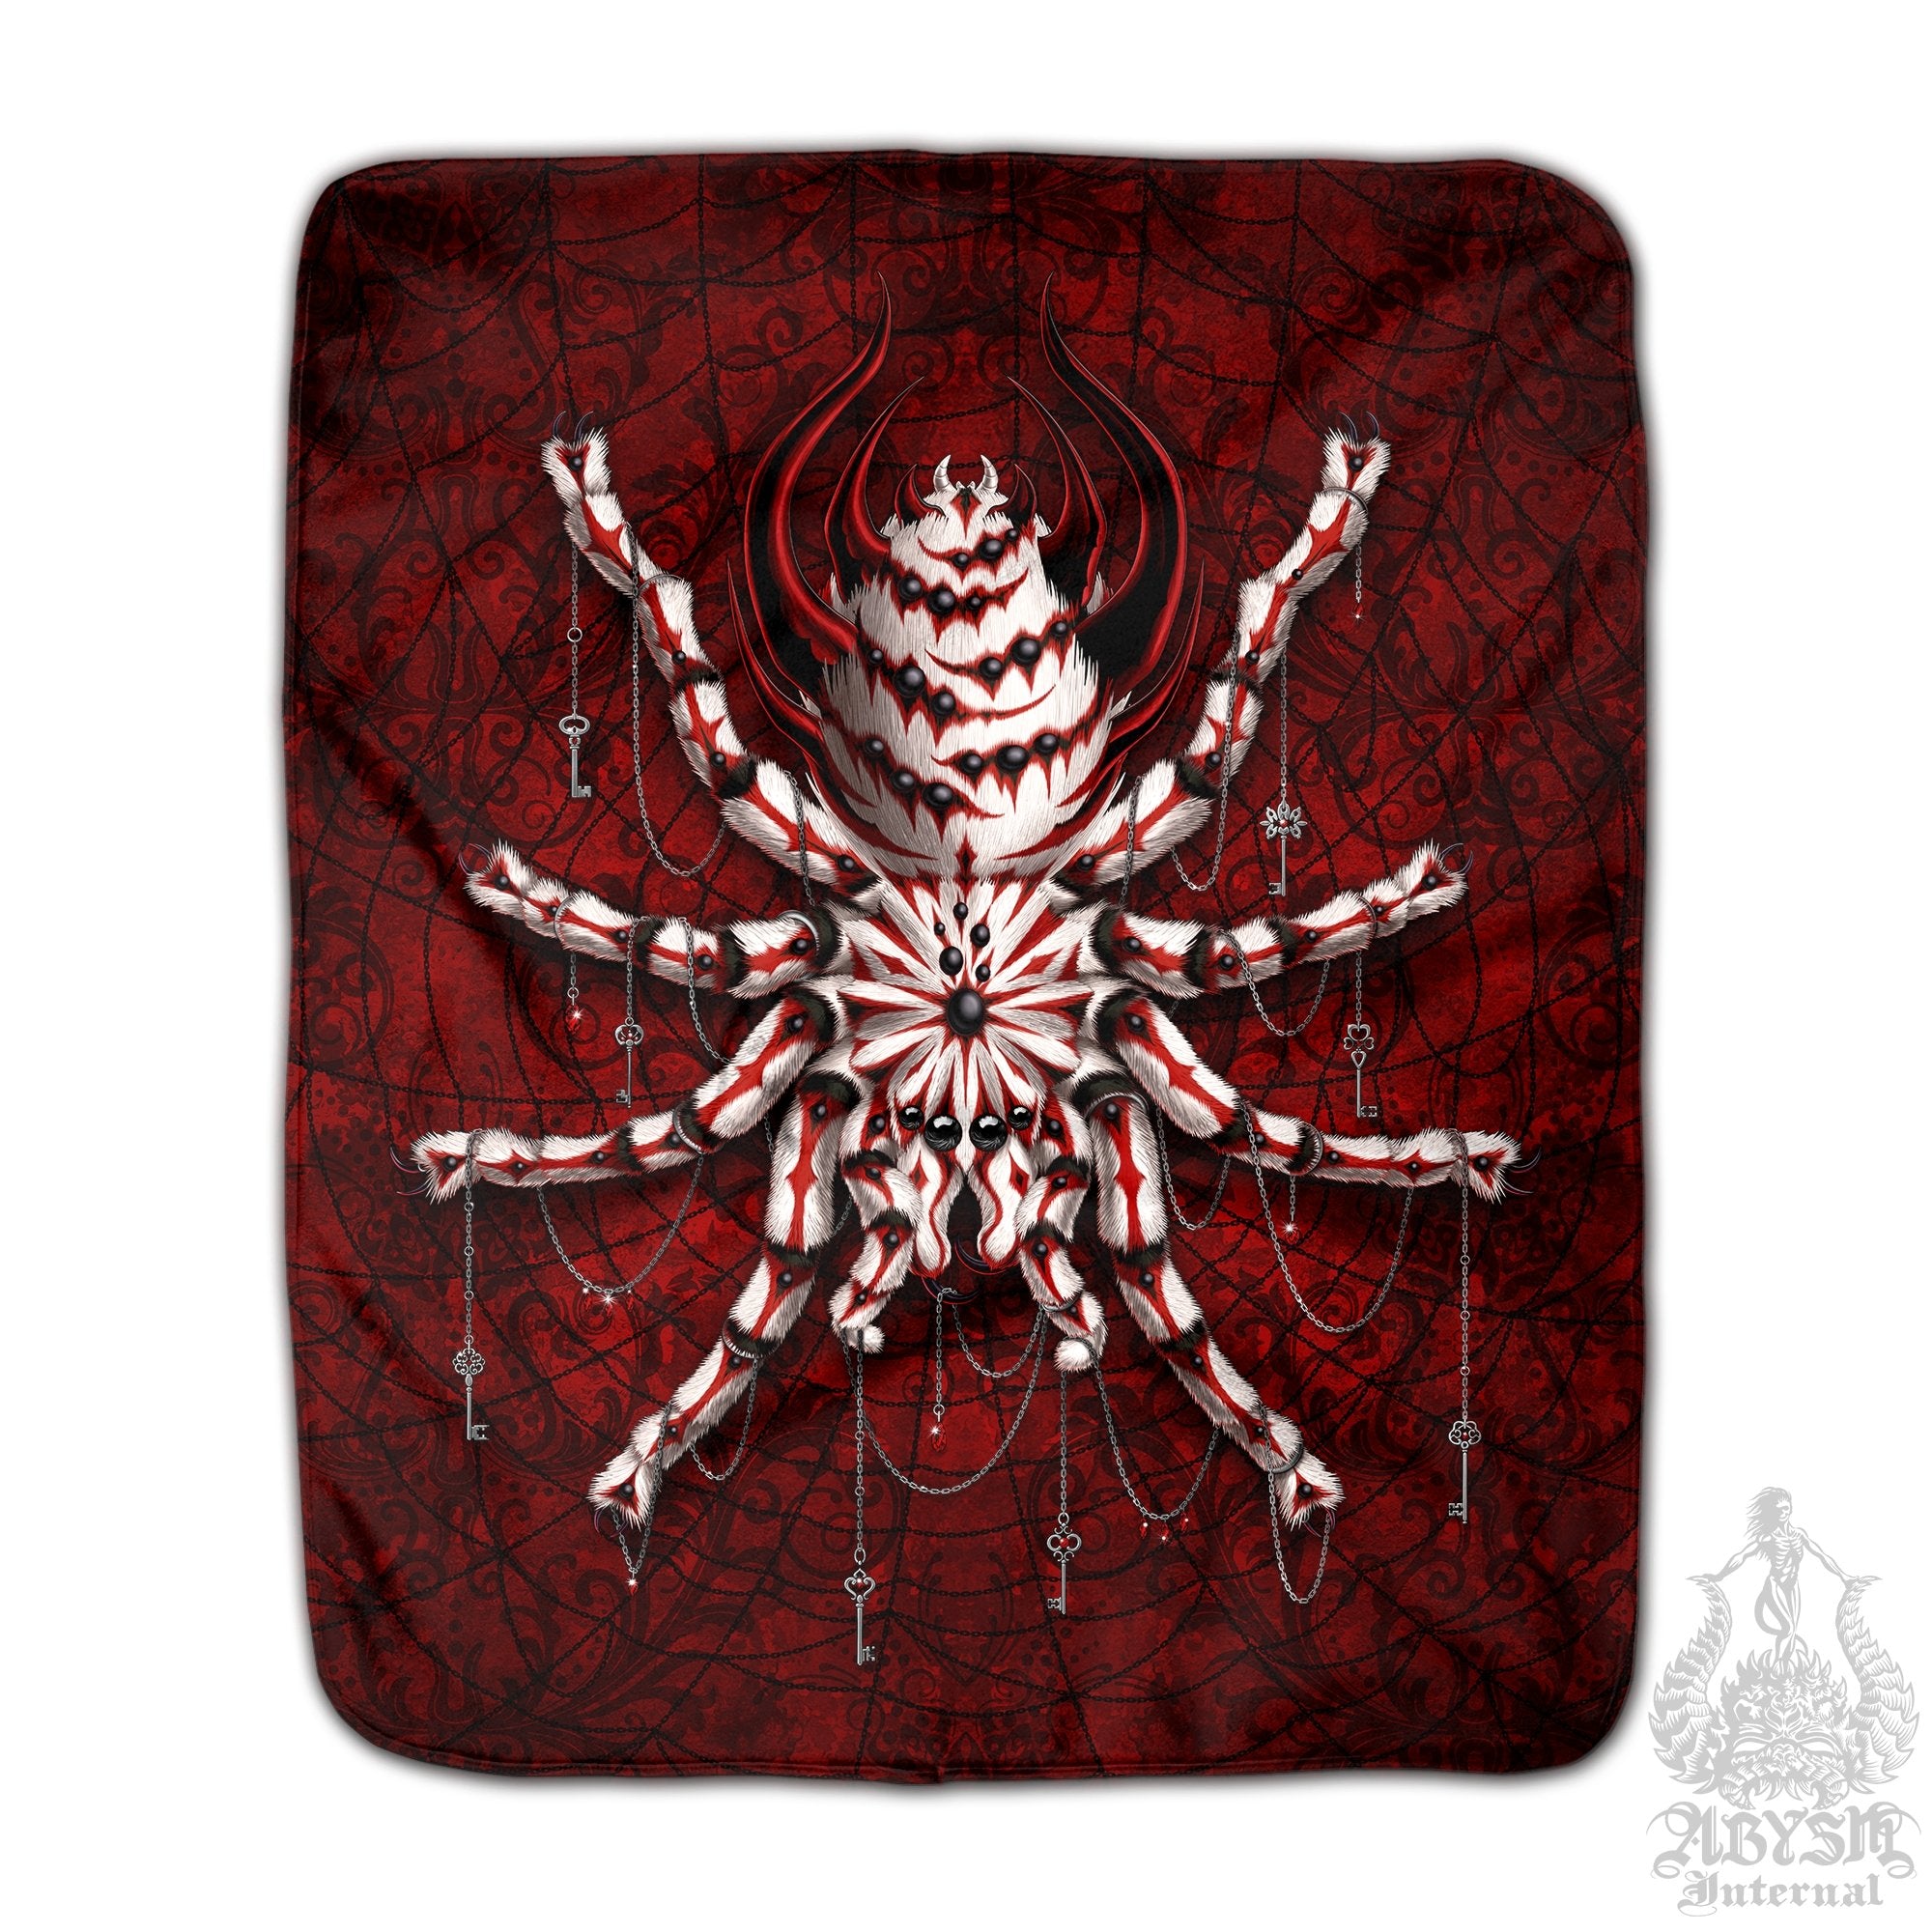 Spider Throw Fleece Blanket, Dark Gift, Goth Home Decor, Alternative Art Gift - Bloody Red Gothic, White, Tarantula Art - Abysm Internal